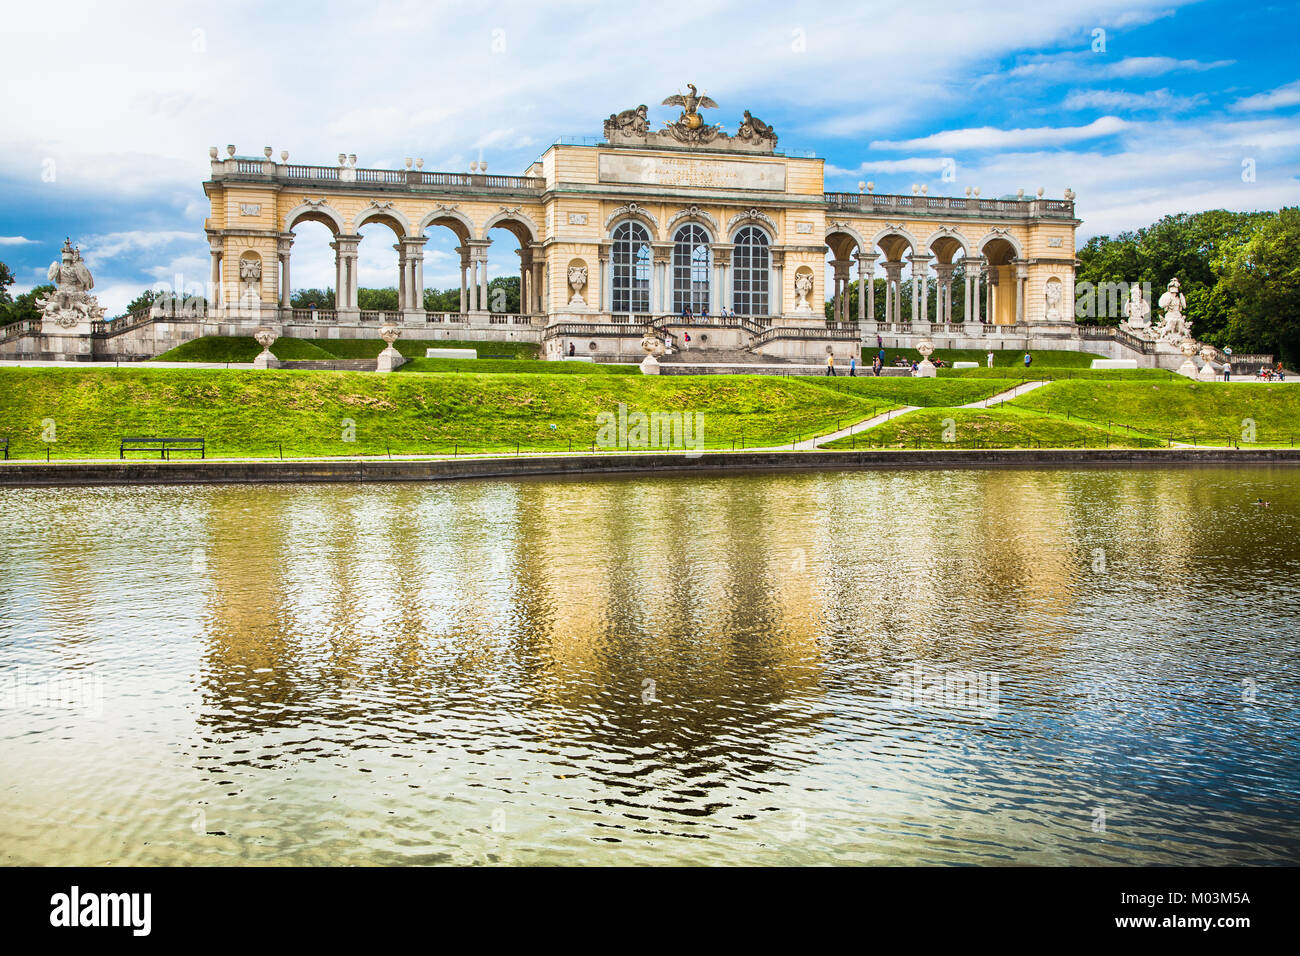 Bellissima vista del famoso Gloriette al Palazzo di Schonbrunn e giardini di Vienna in Austria Foto Stock